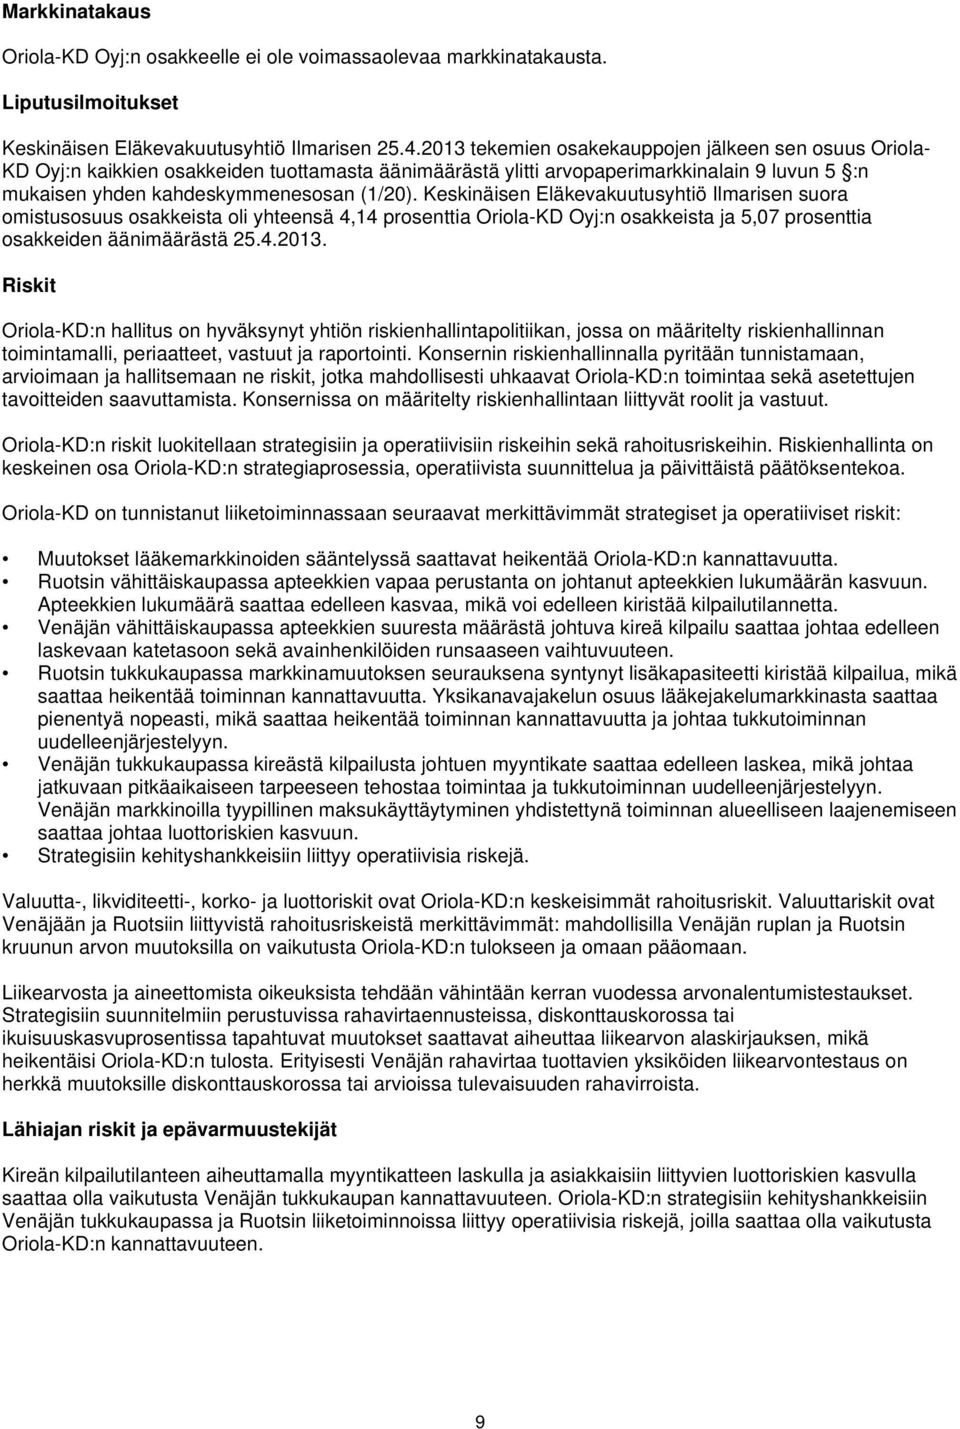 Keskinäisen Eläkevakuutusyhtiö Ilmarisen suora omistusosuus osakkeista oli yhteensä 4,14 prosenttia Oriola-KD Oyj:n osakkeista ja 5,07 prosenttia osakkeiden äänimäärästä 25.4.2013.